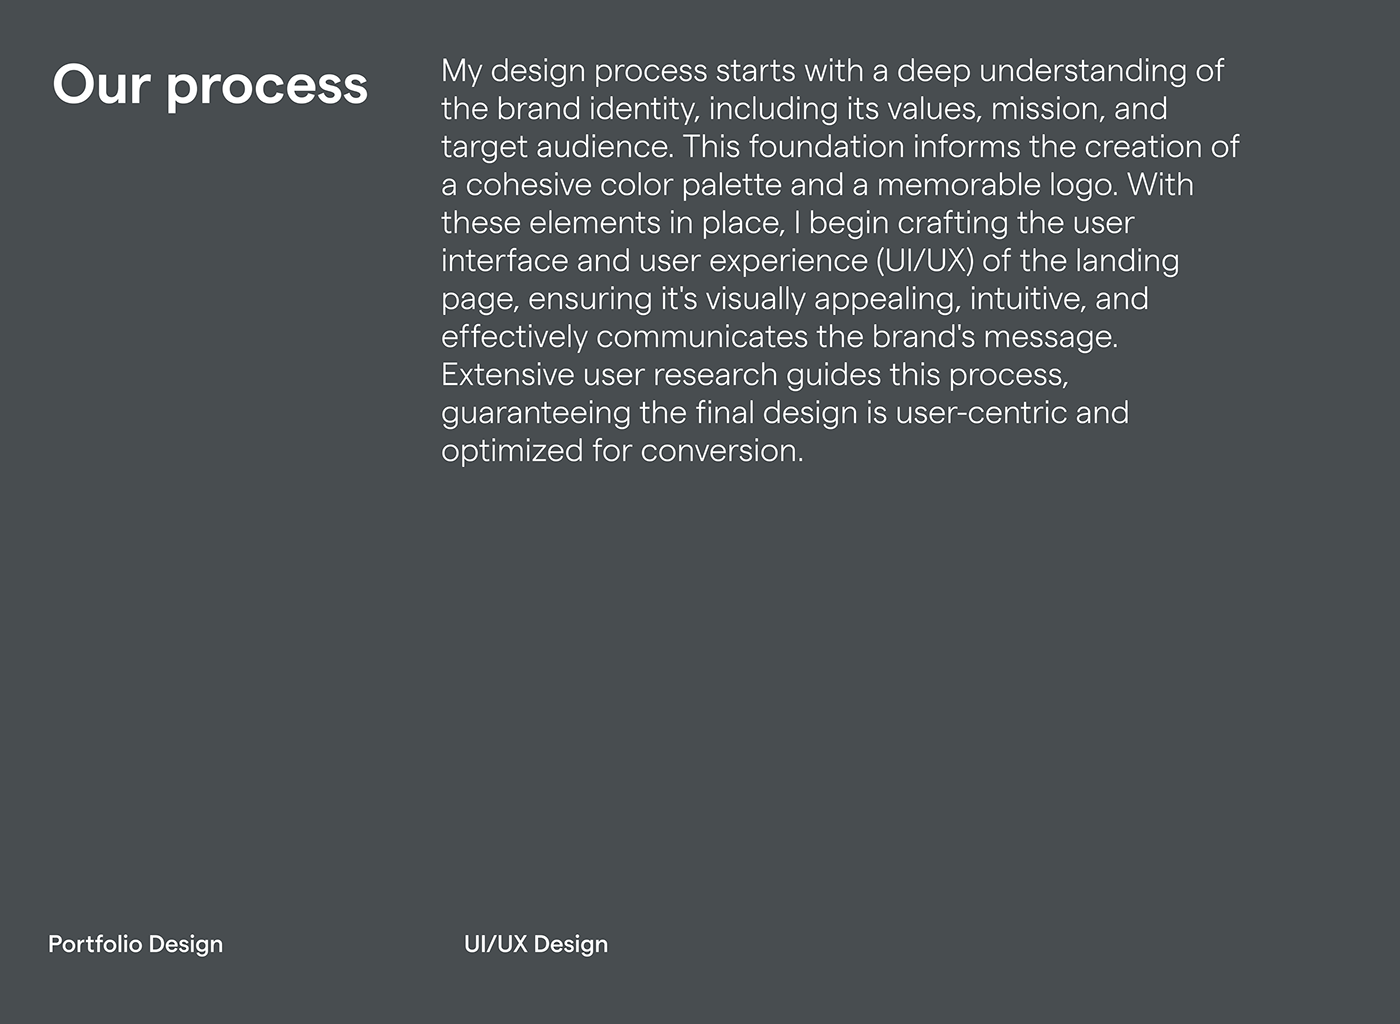 ui ux UX UI UI UX design portfolio ui ux designer brand identity Brand Design brand guidelines visual identity Graphic Designer